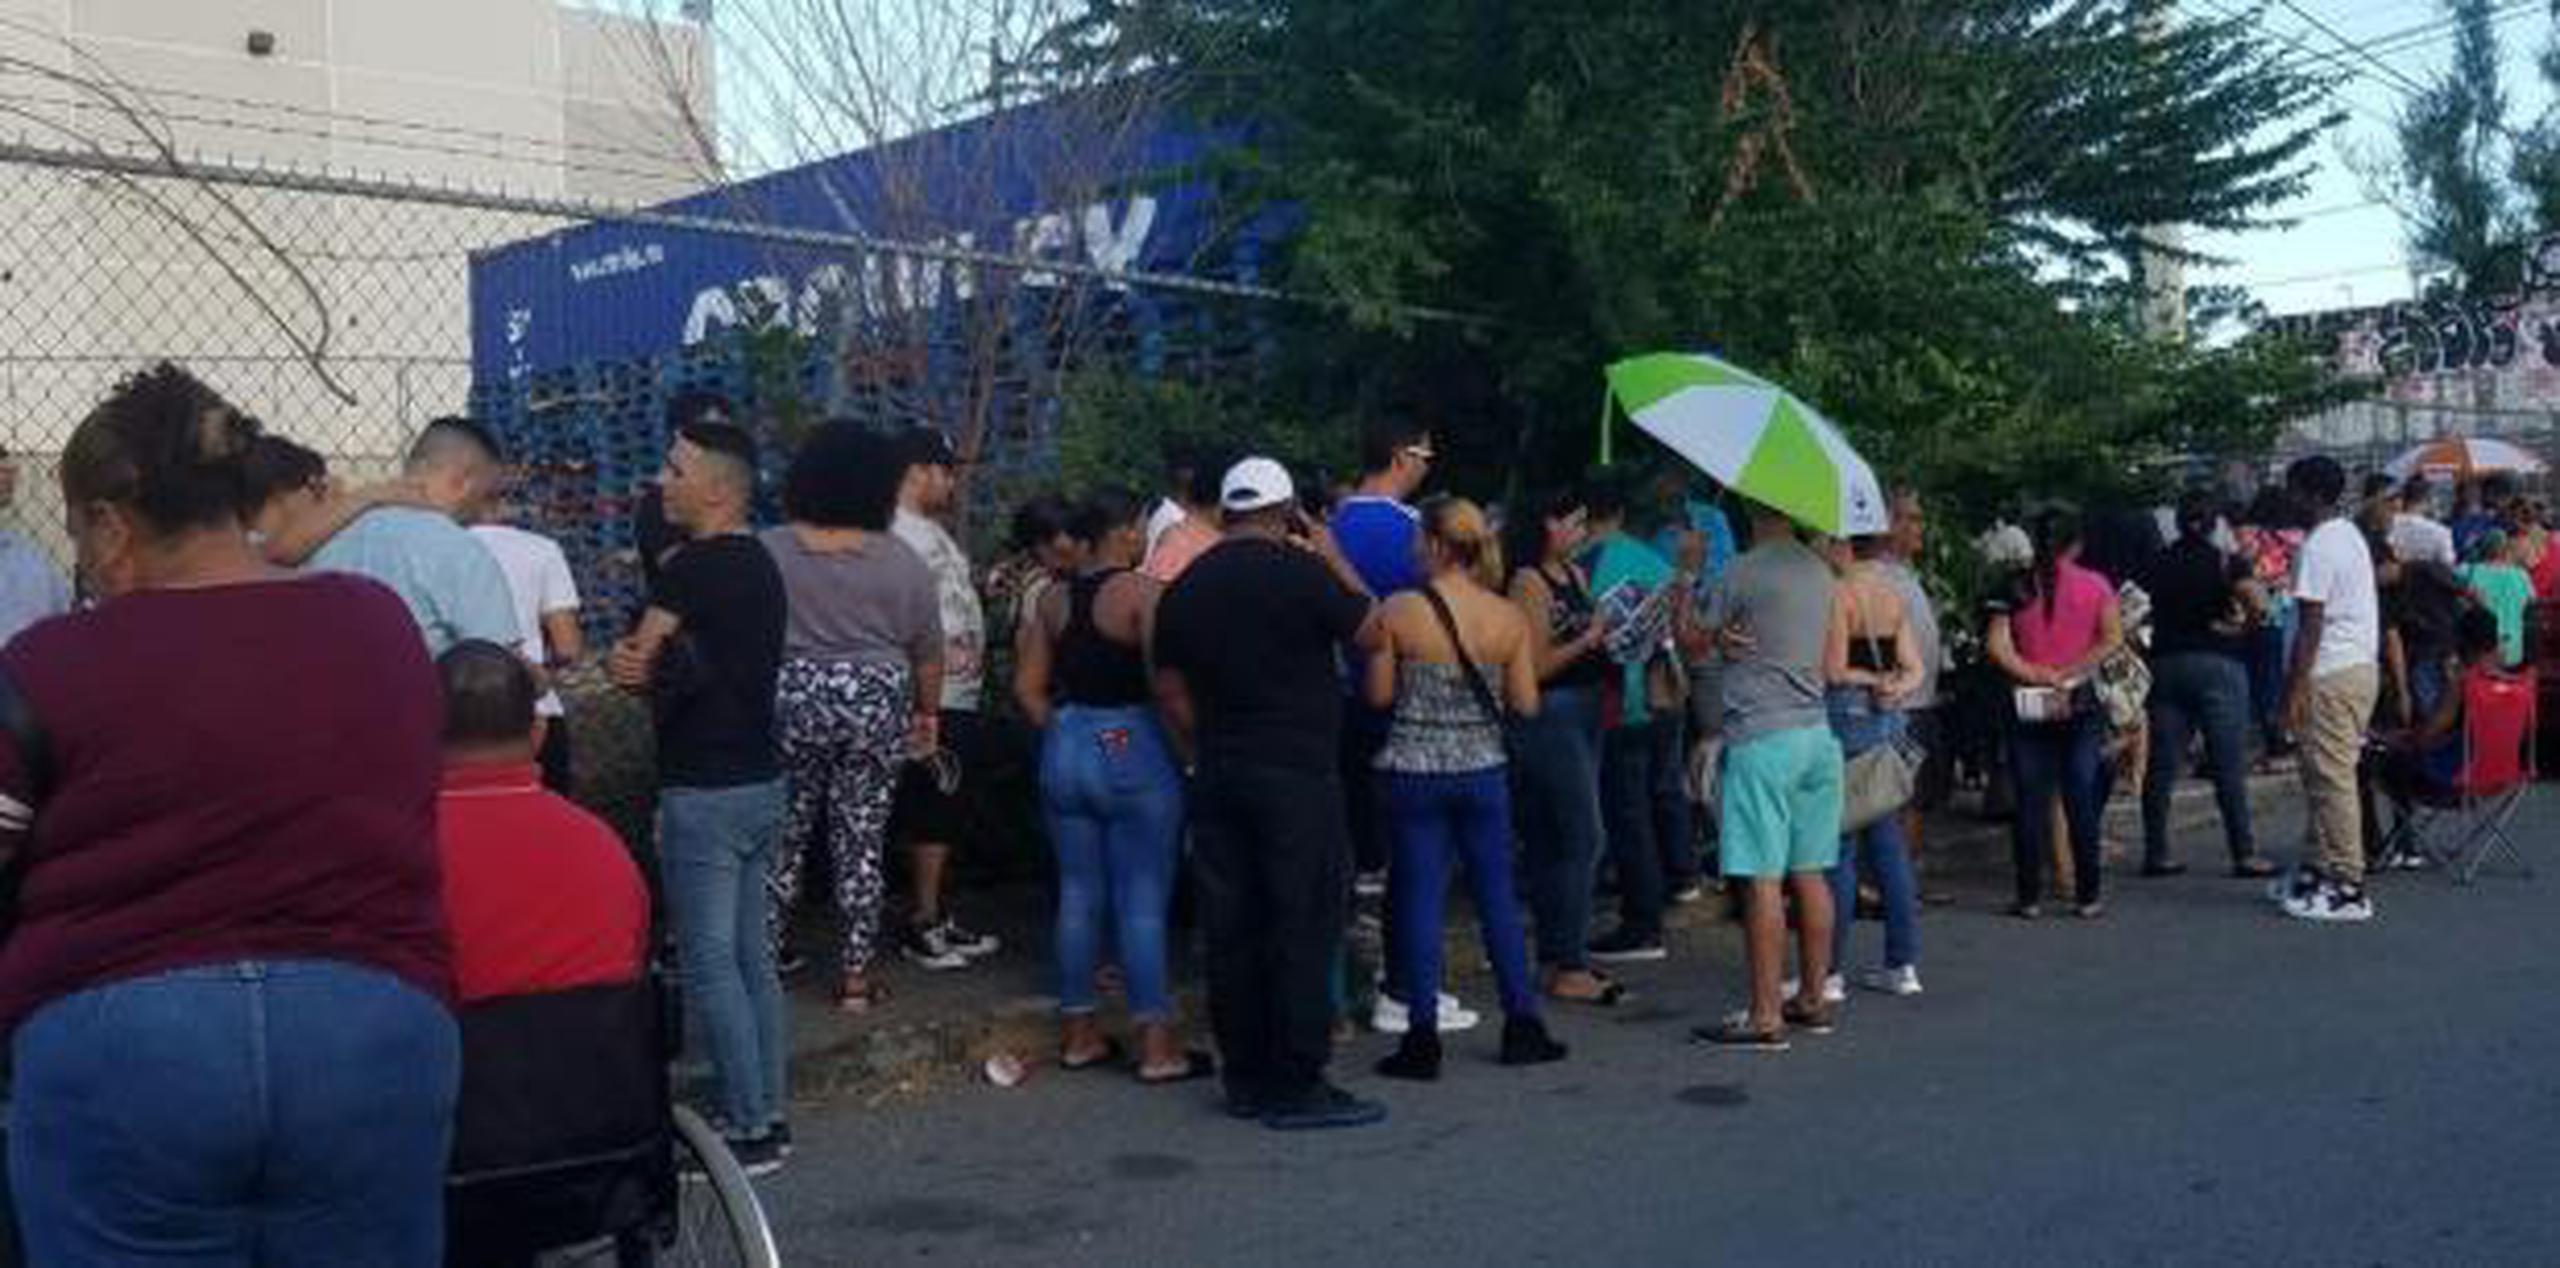 Decenas de personas hicieron filas al sol esperando ayer en la tarde la apertura de la tienda Walmart en Santurce –entre otras– para beneficiarse de los especiales. (nydia.bauza@gfrmedia.com)